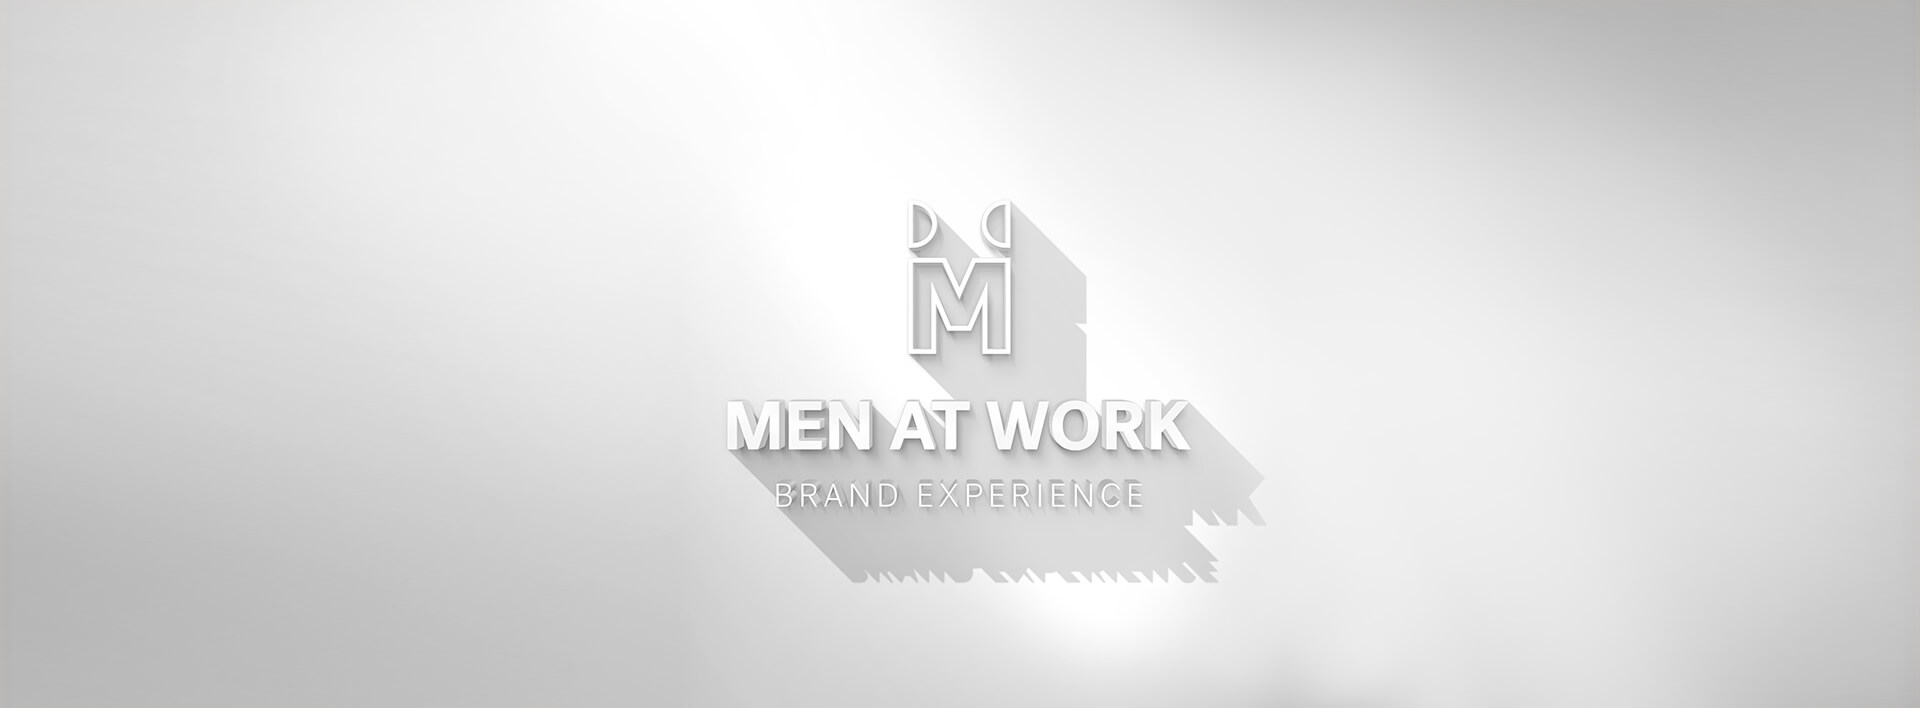 Men At Work - Awards